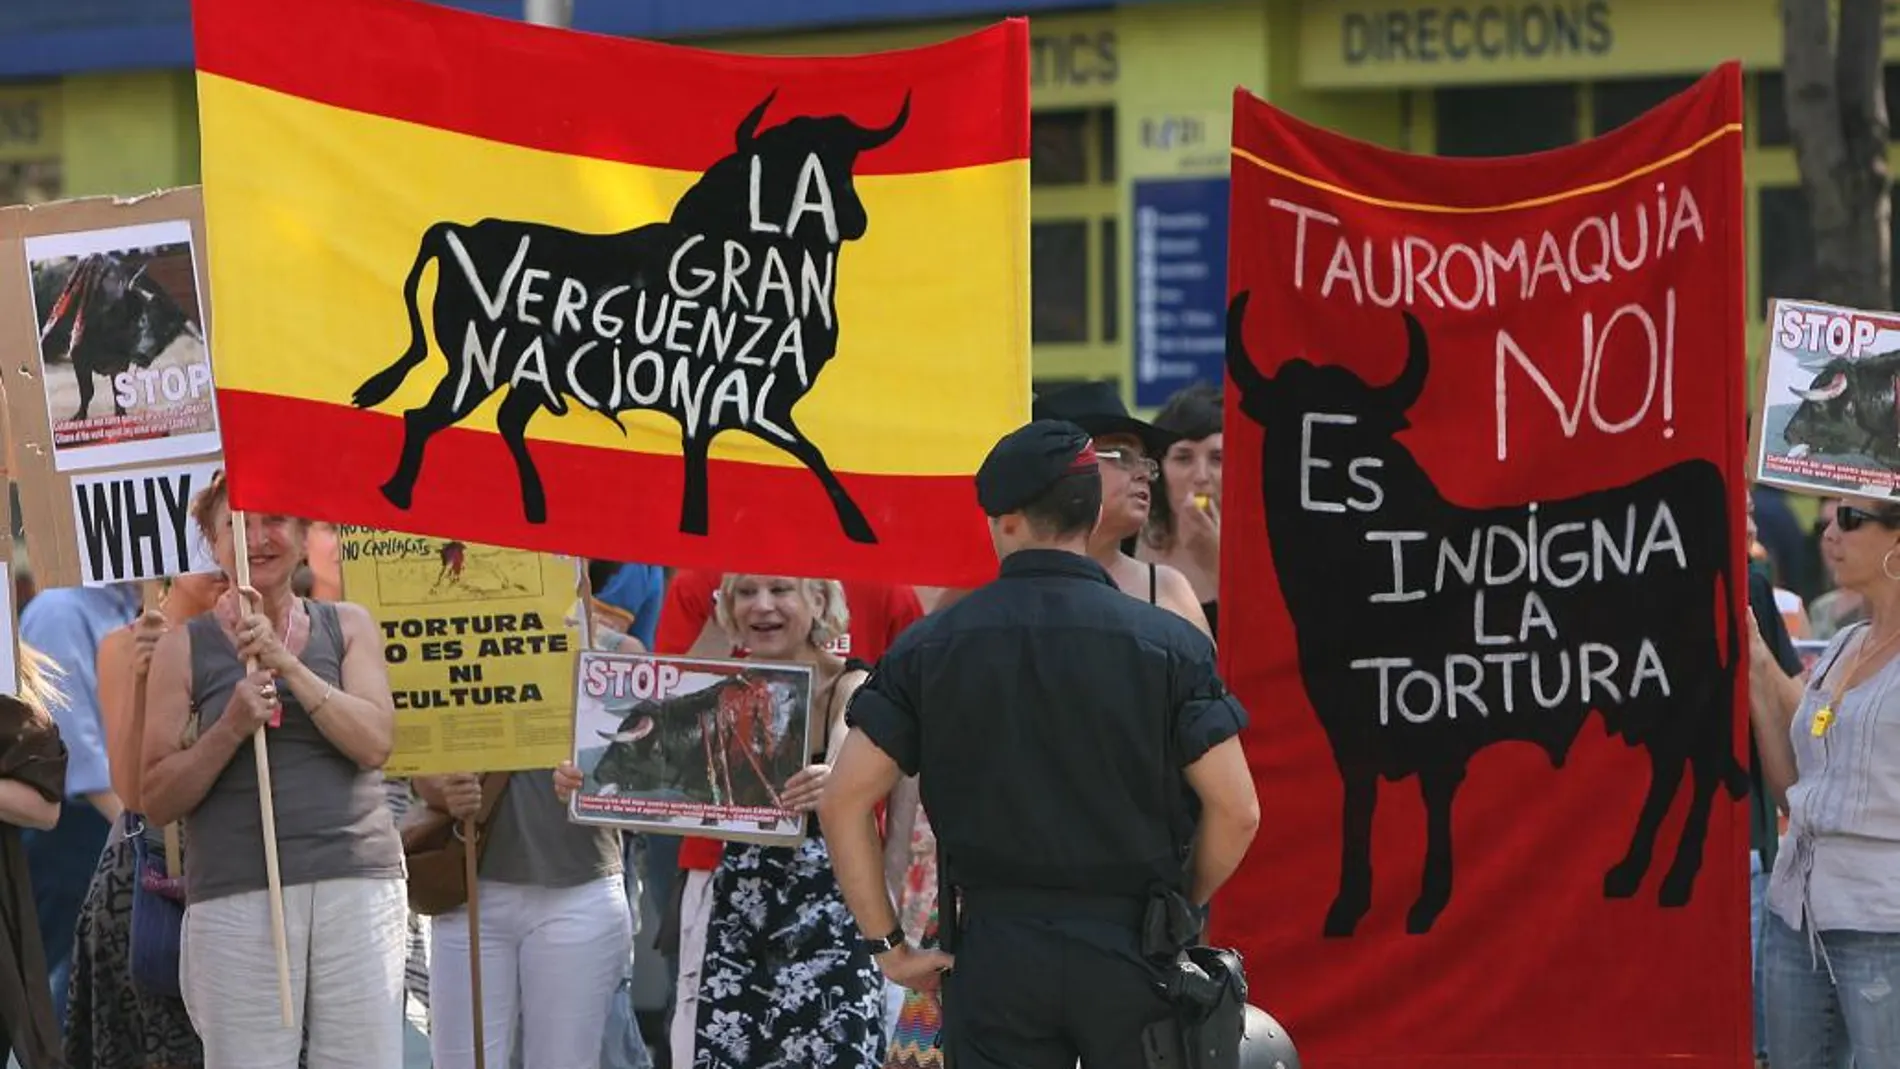 Una manifestación de los antitaurinos en Barcelona